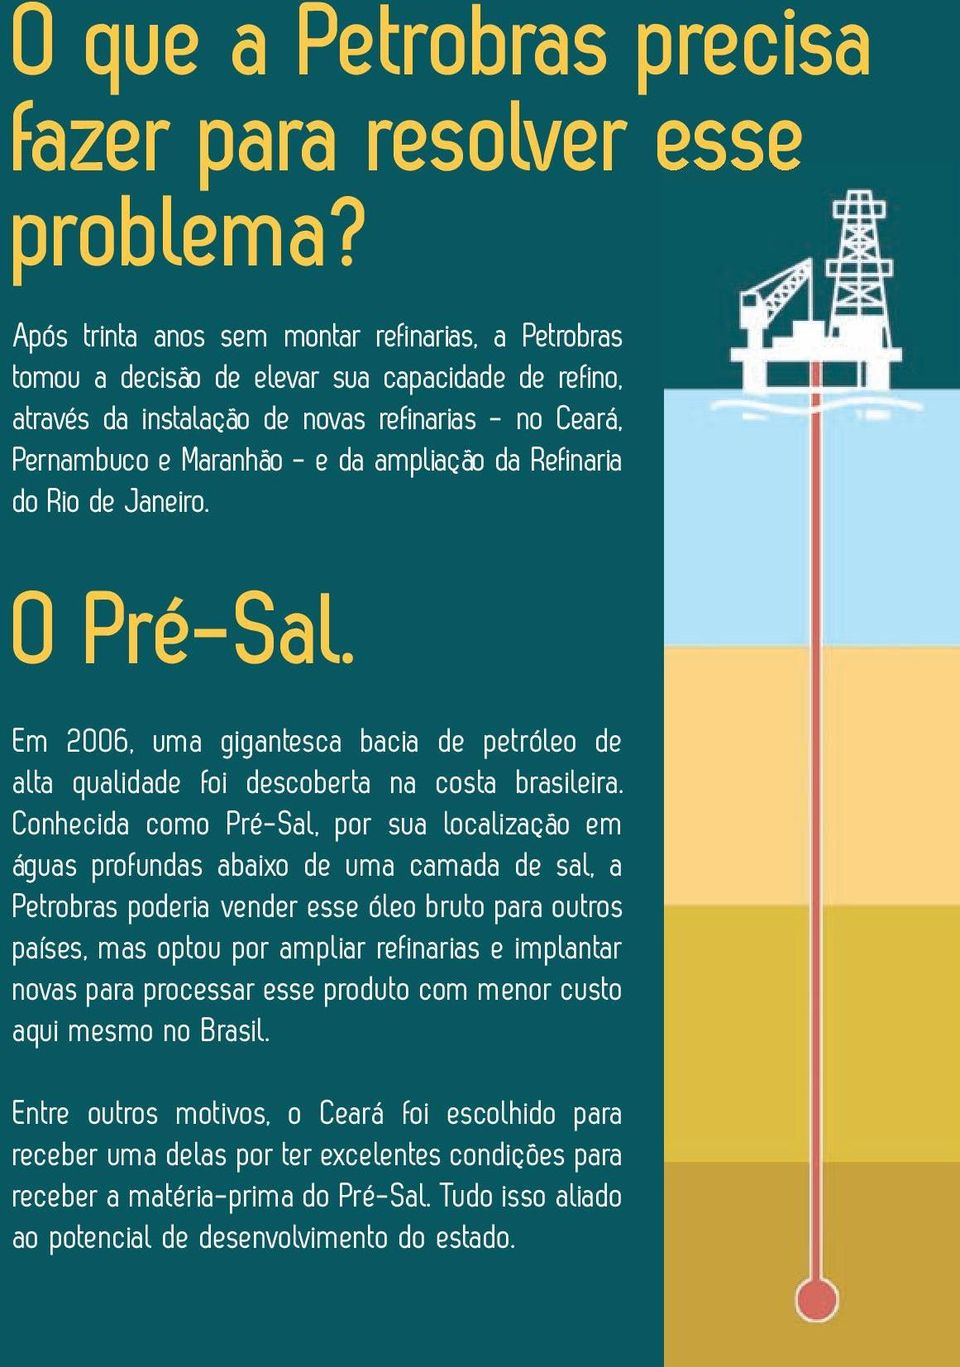 Refinaria do Rio de Janeiro. O Pré-Sal. Em 2006, uma gigantesca bacia de petróleo de alta qualidade foi descoberta na costa brasileira.